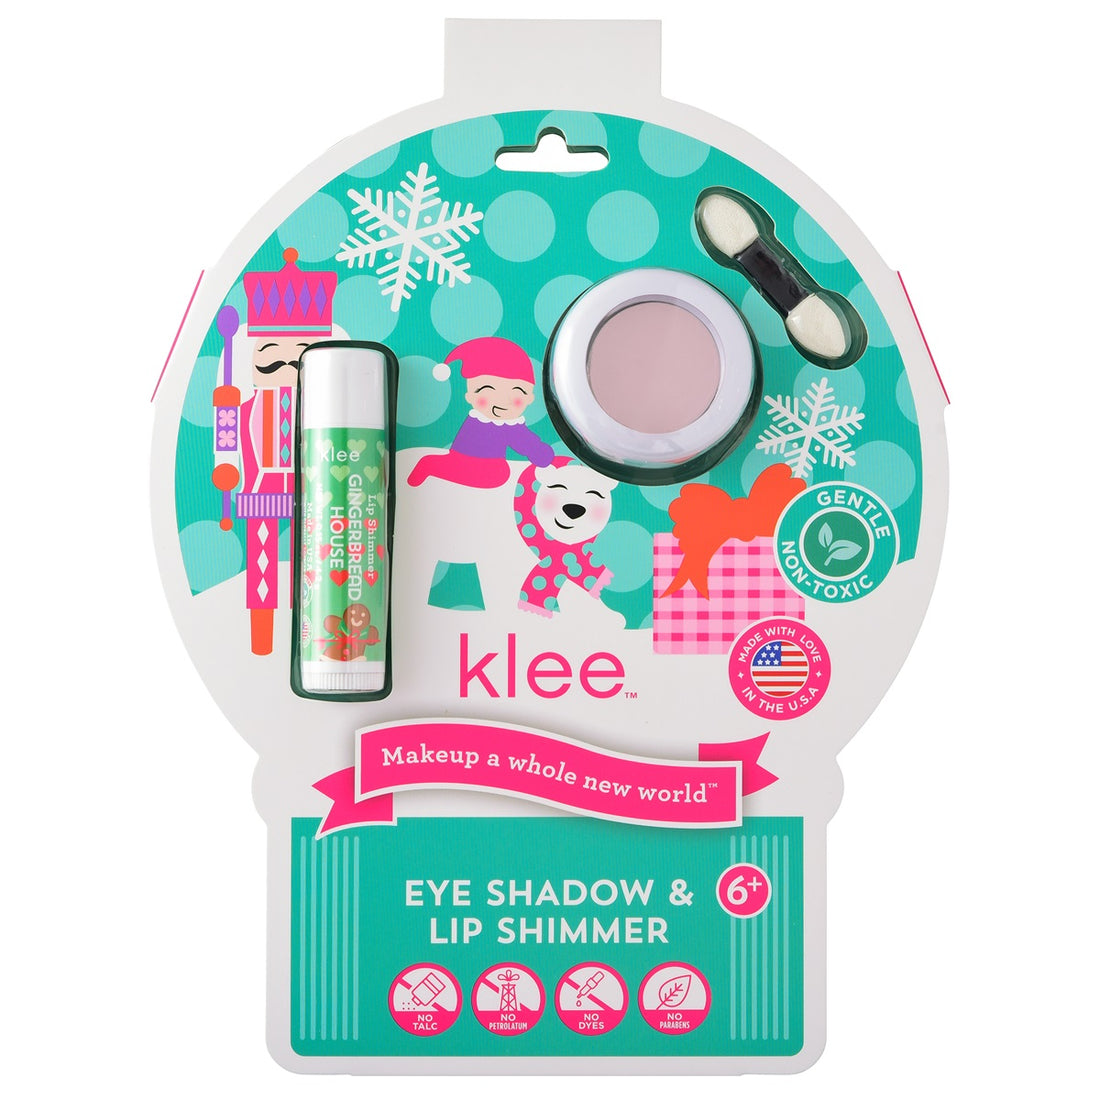 Klee Naturals - Xmas Edition - Natural Mineral Eyeshadow &amp; Lip Shimmer Duo 聖誕版 - 天然礦物眼影及唇蜜組合 (Jingle Shimmer)